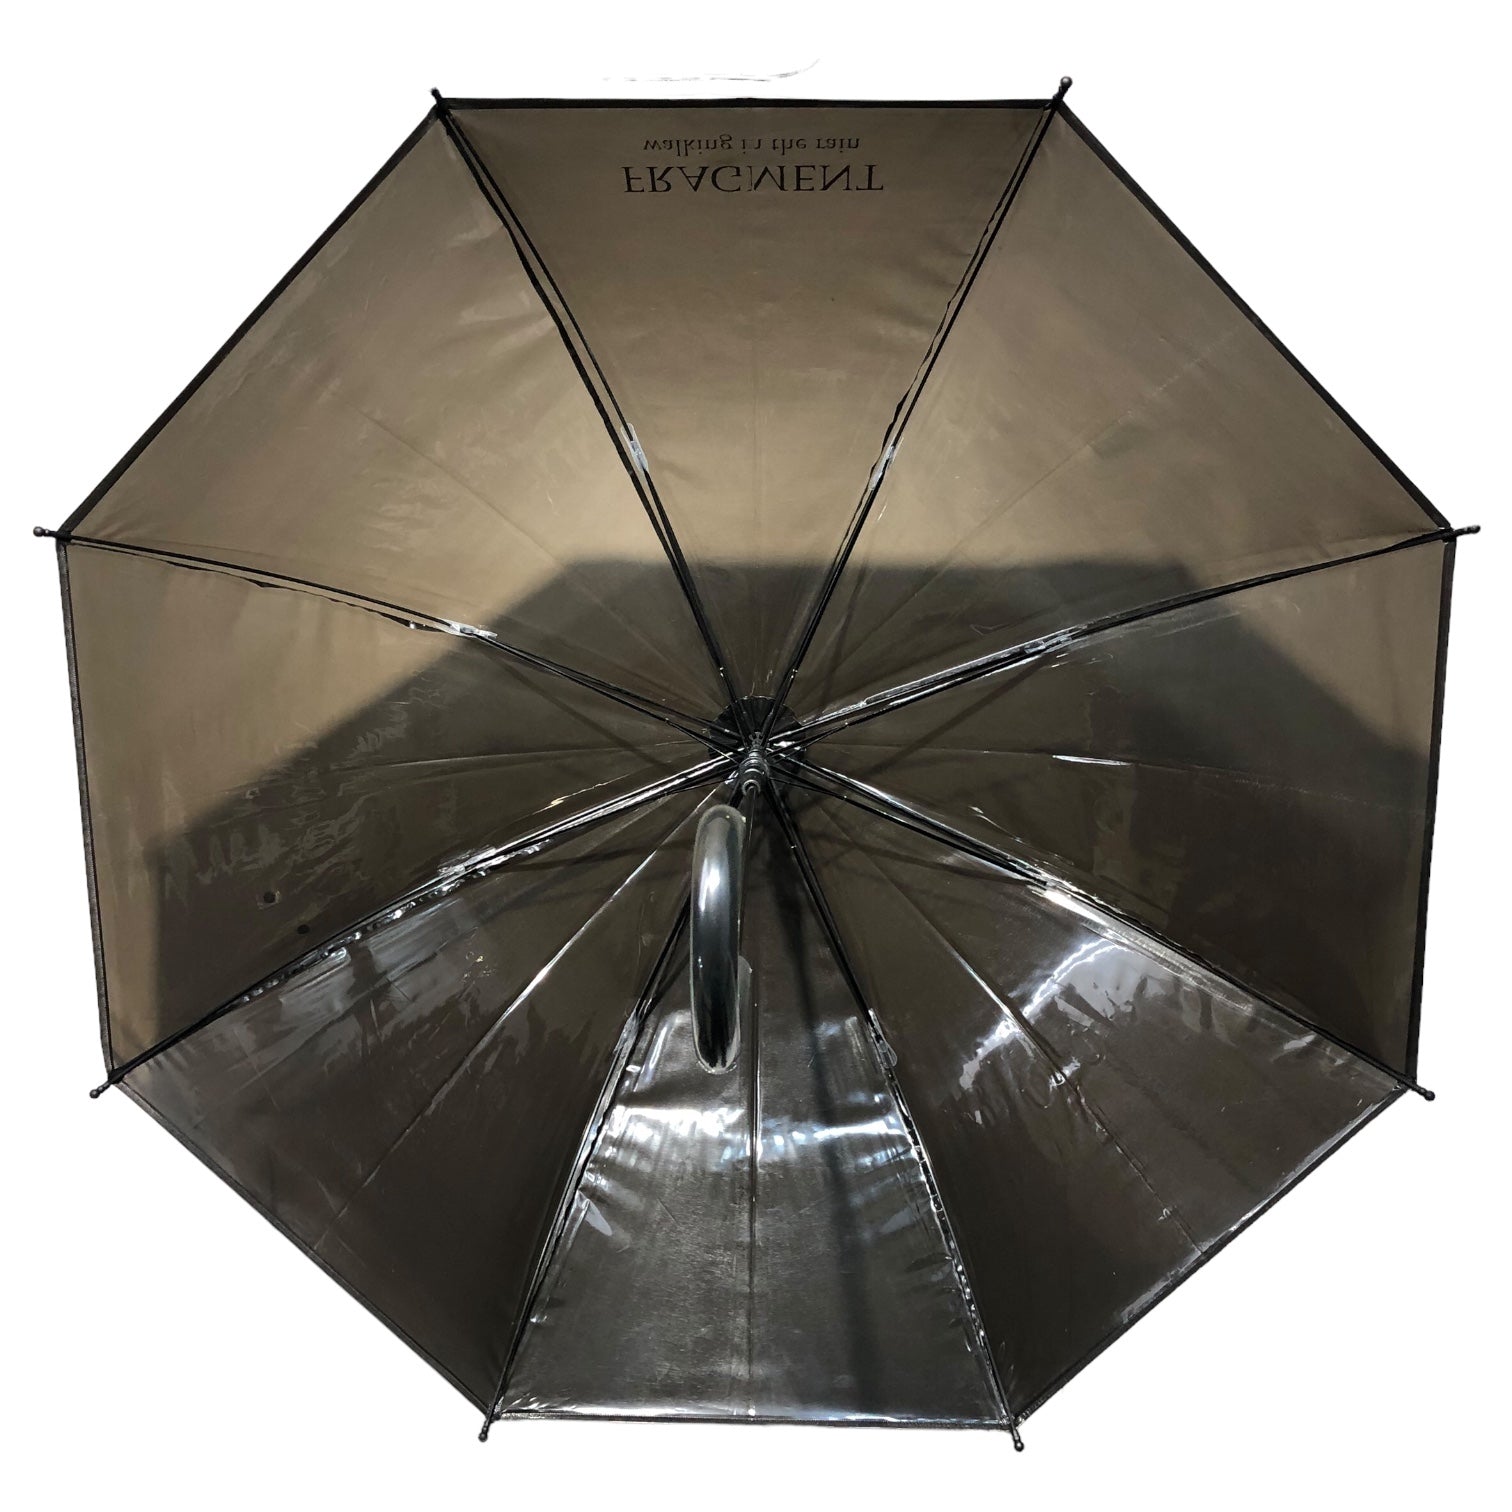 FRAGMENT DESIGN(フラグメントデザイン) 傘 umbrella the conveni  ブラック